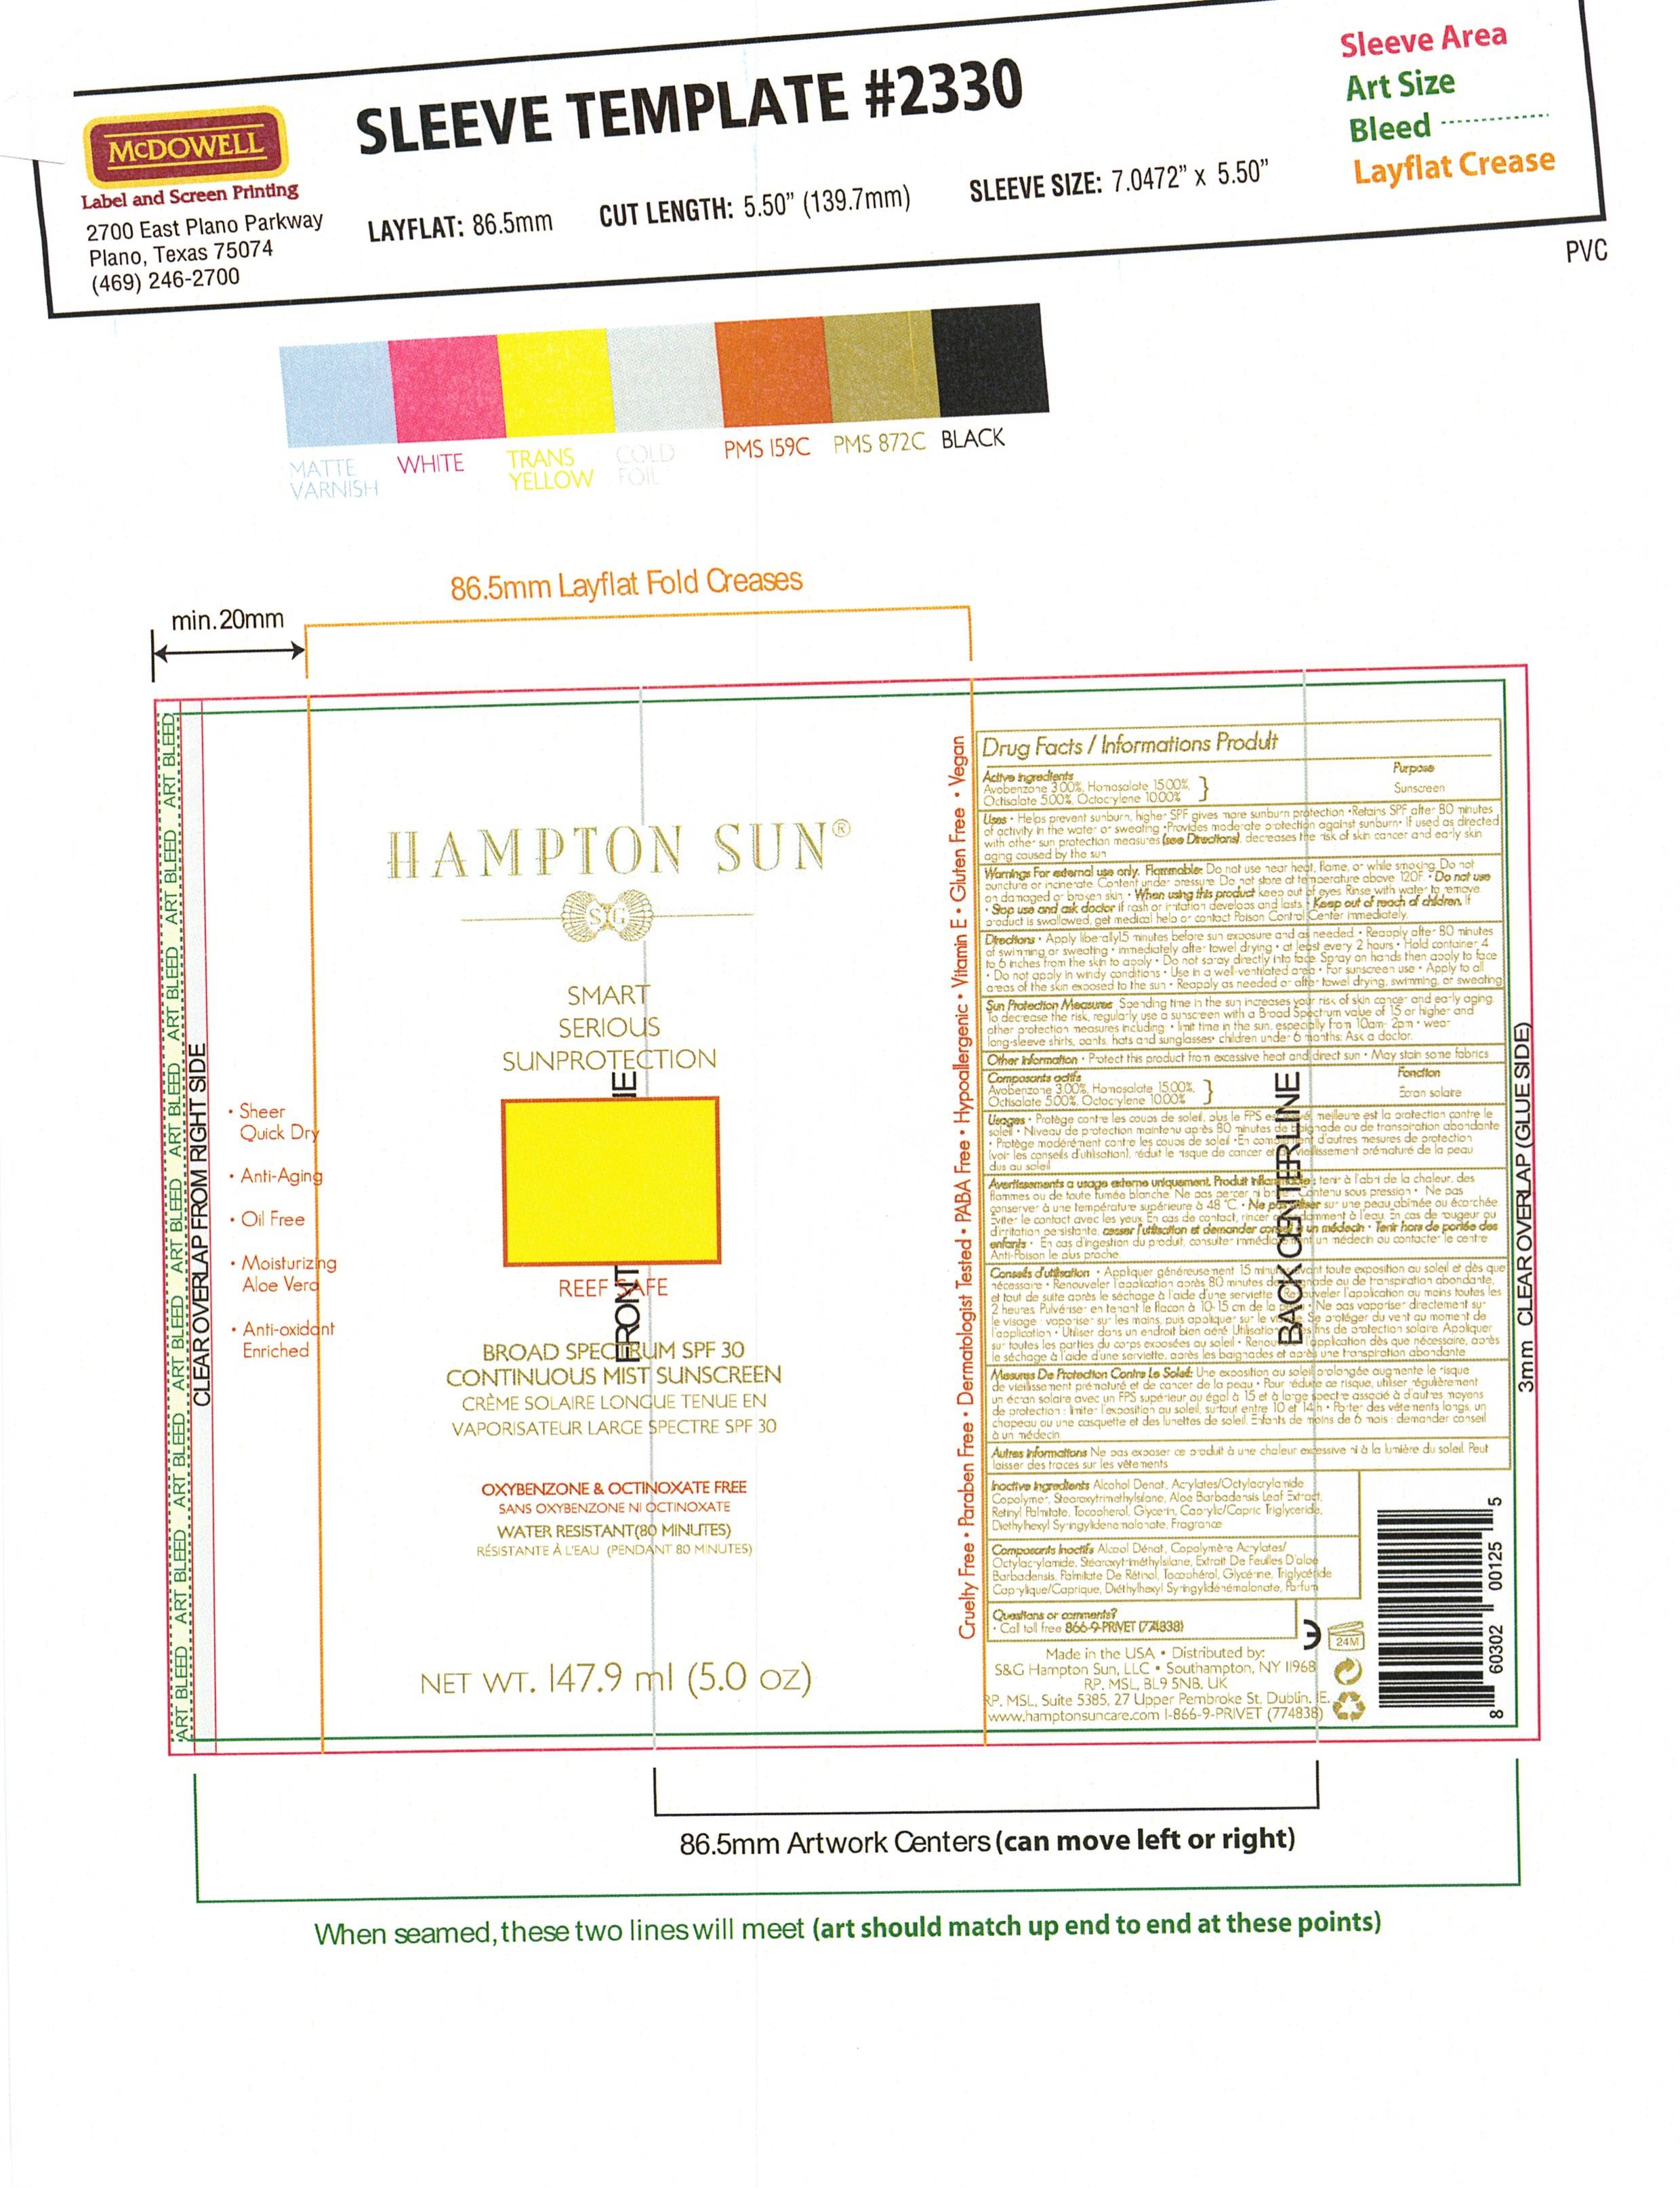 Hampton Sun SPF 30 Sunscreen